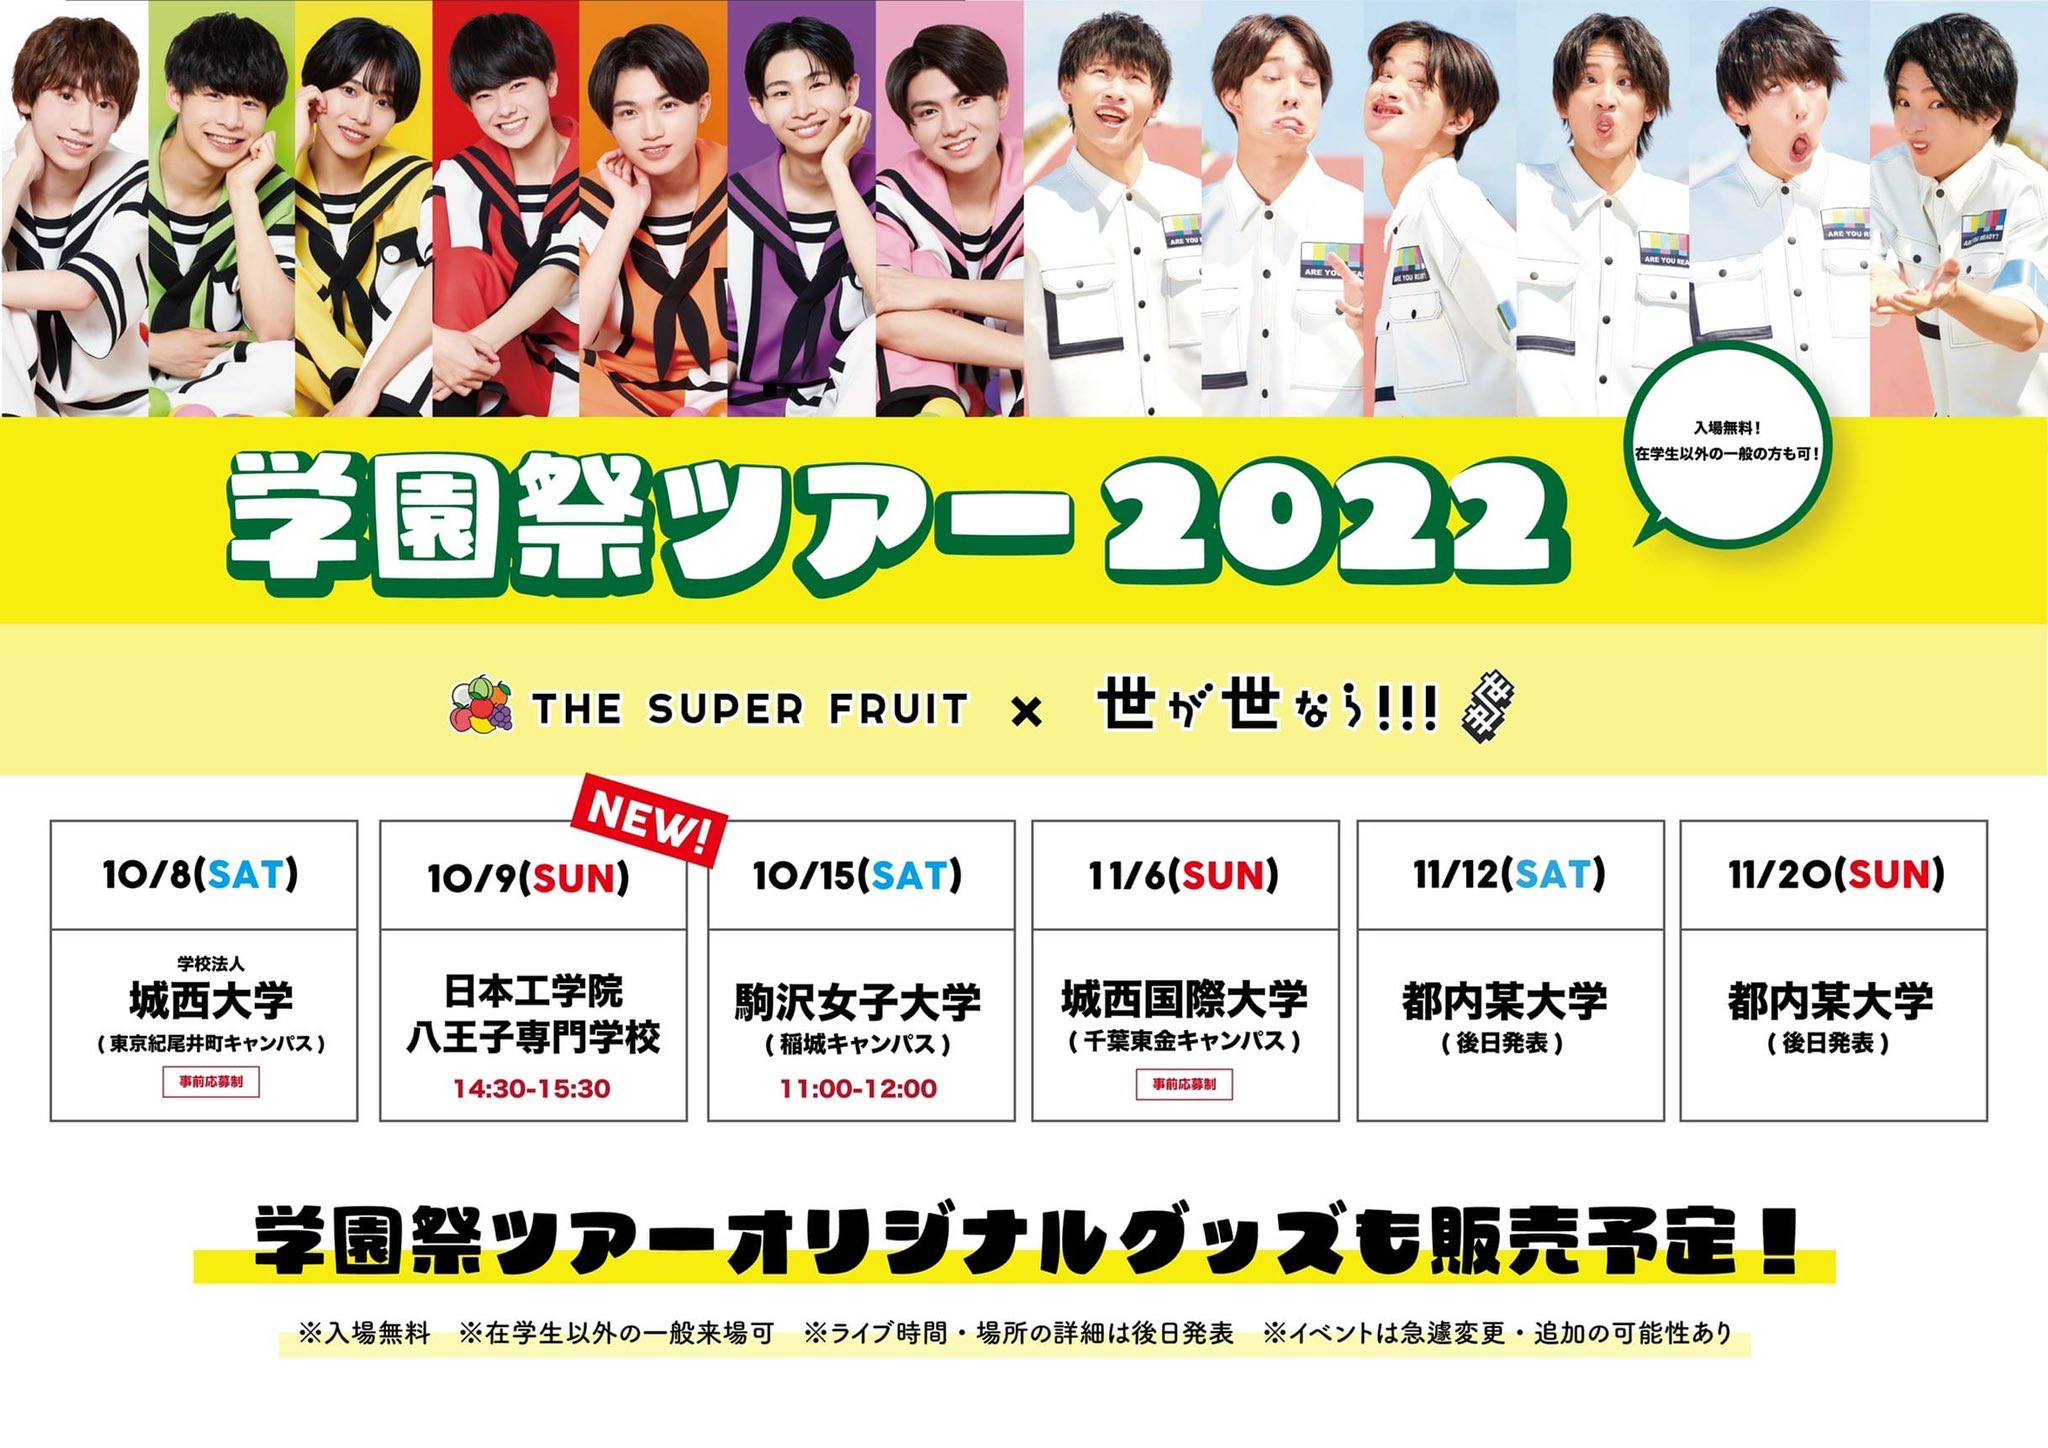 【NEWS】「THE SUPER FRUIT × 世が世なら!!! 学園祭ツアー2022」Day1・Day2物販に関するお知らせ